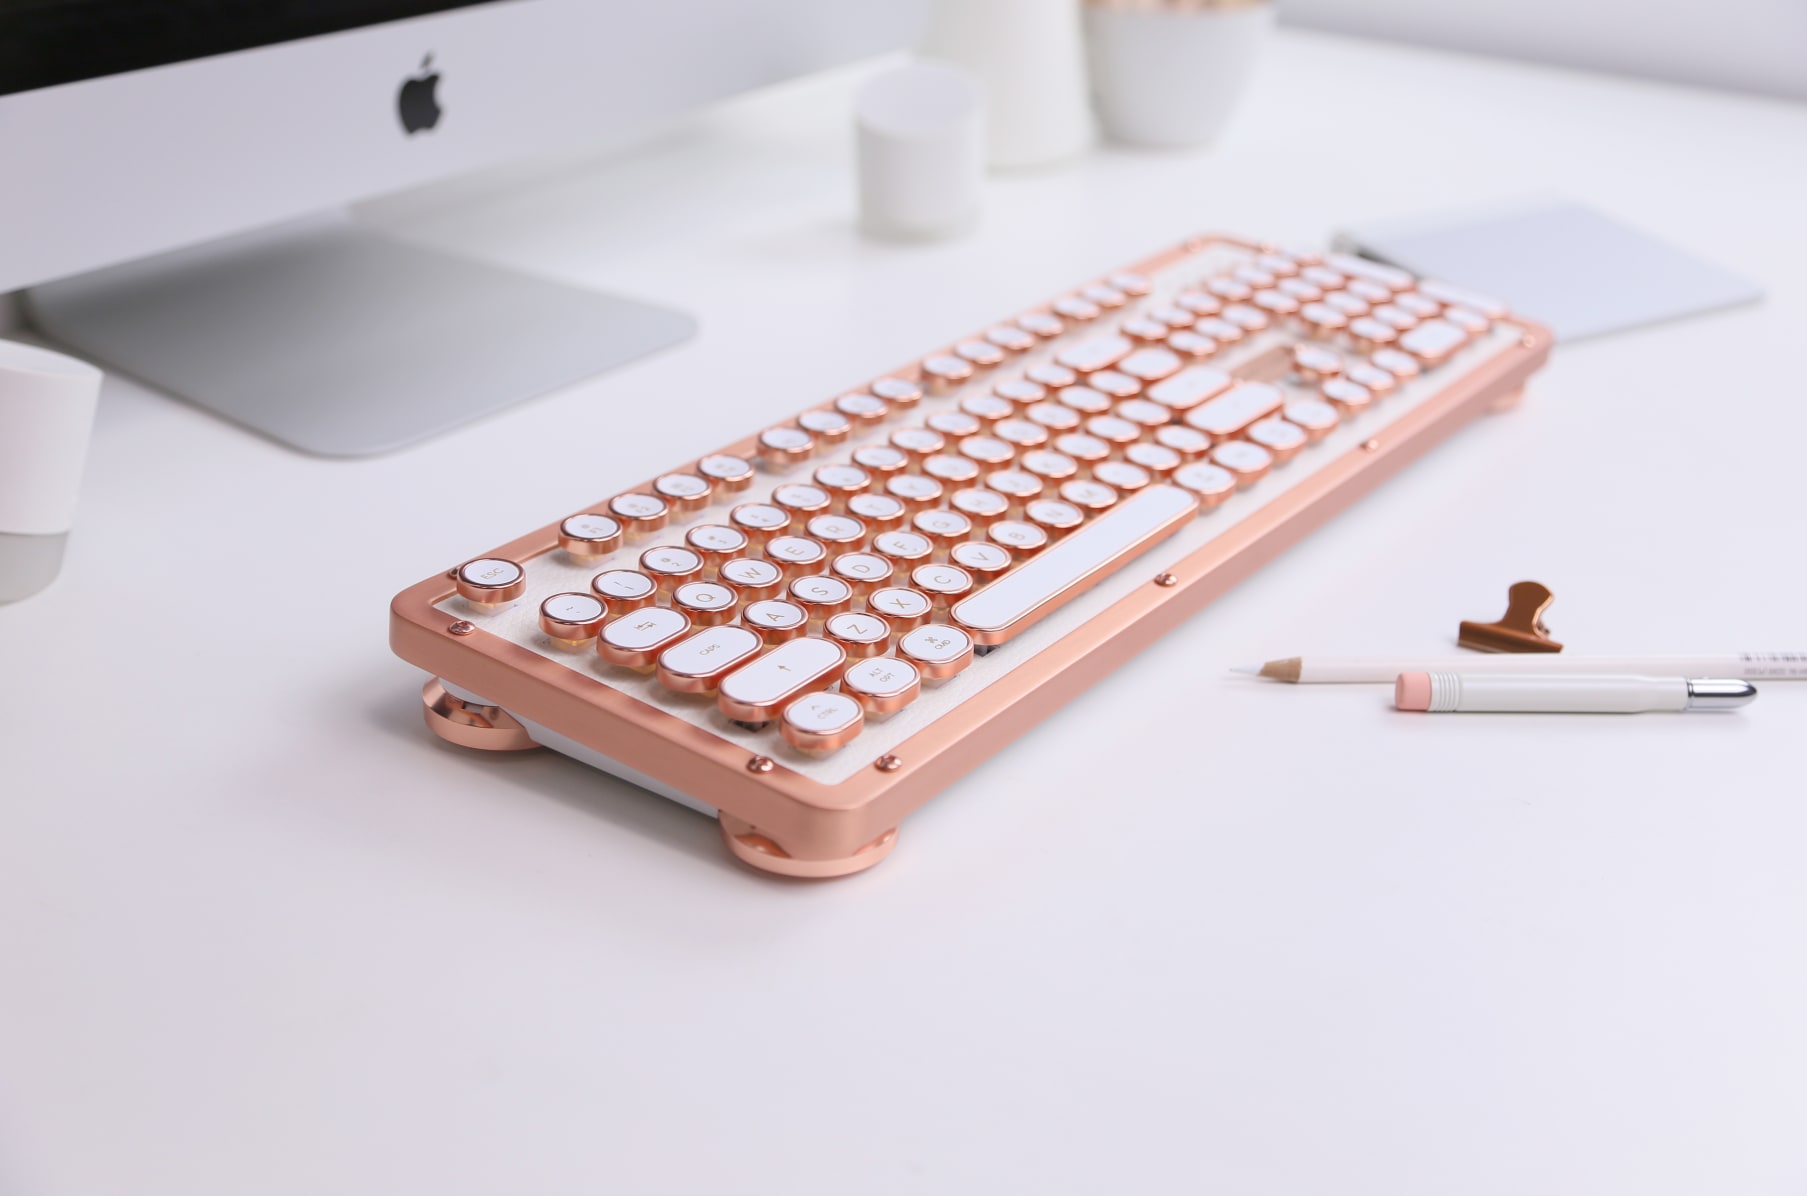 El AZIO Retro Compact Keyboard ya está disponible en Indiegogo